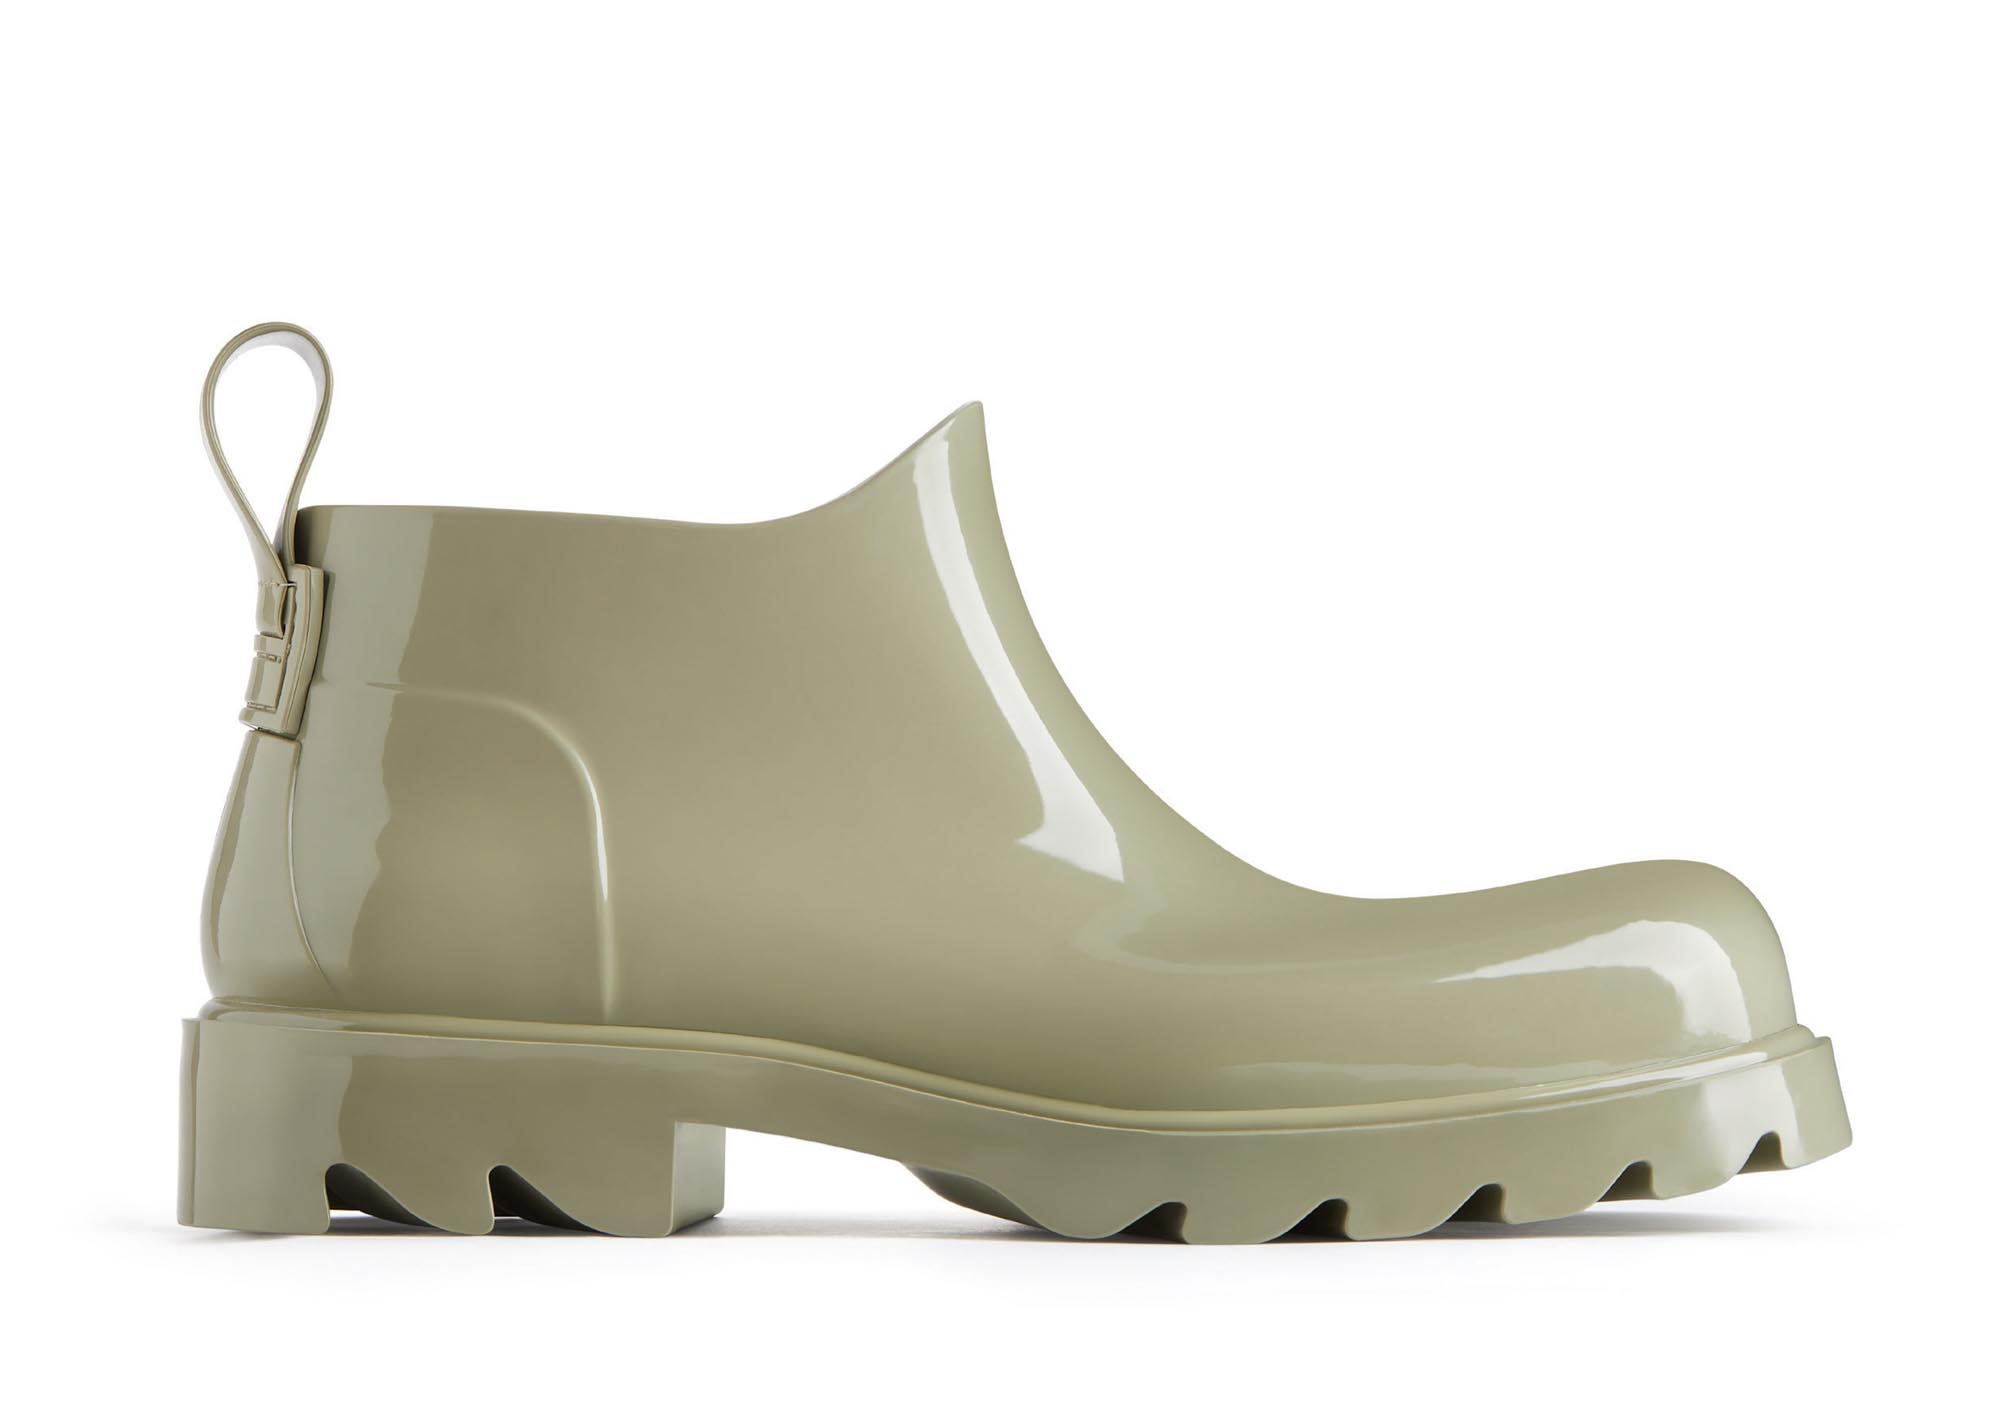 ボッテガ・ヴェネタがアンクルブーツ「ストライド」発売、オールラバーでミニマルなデザイン